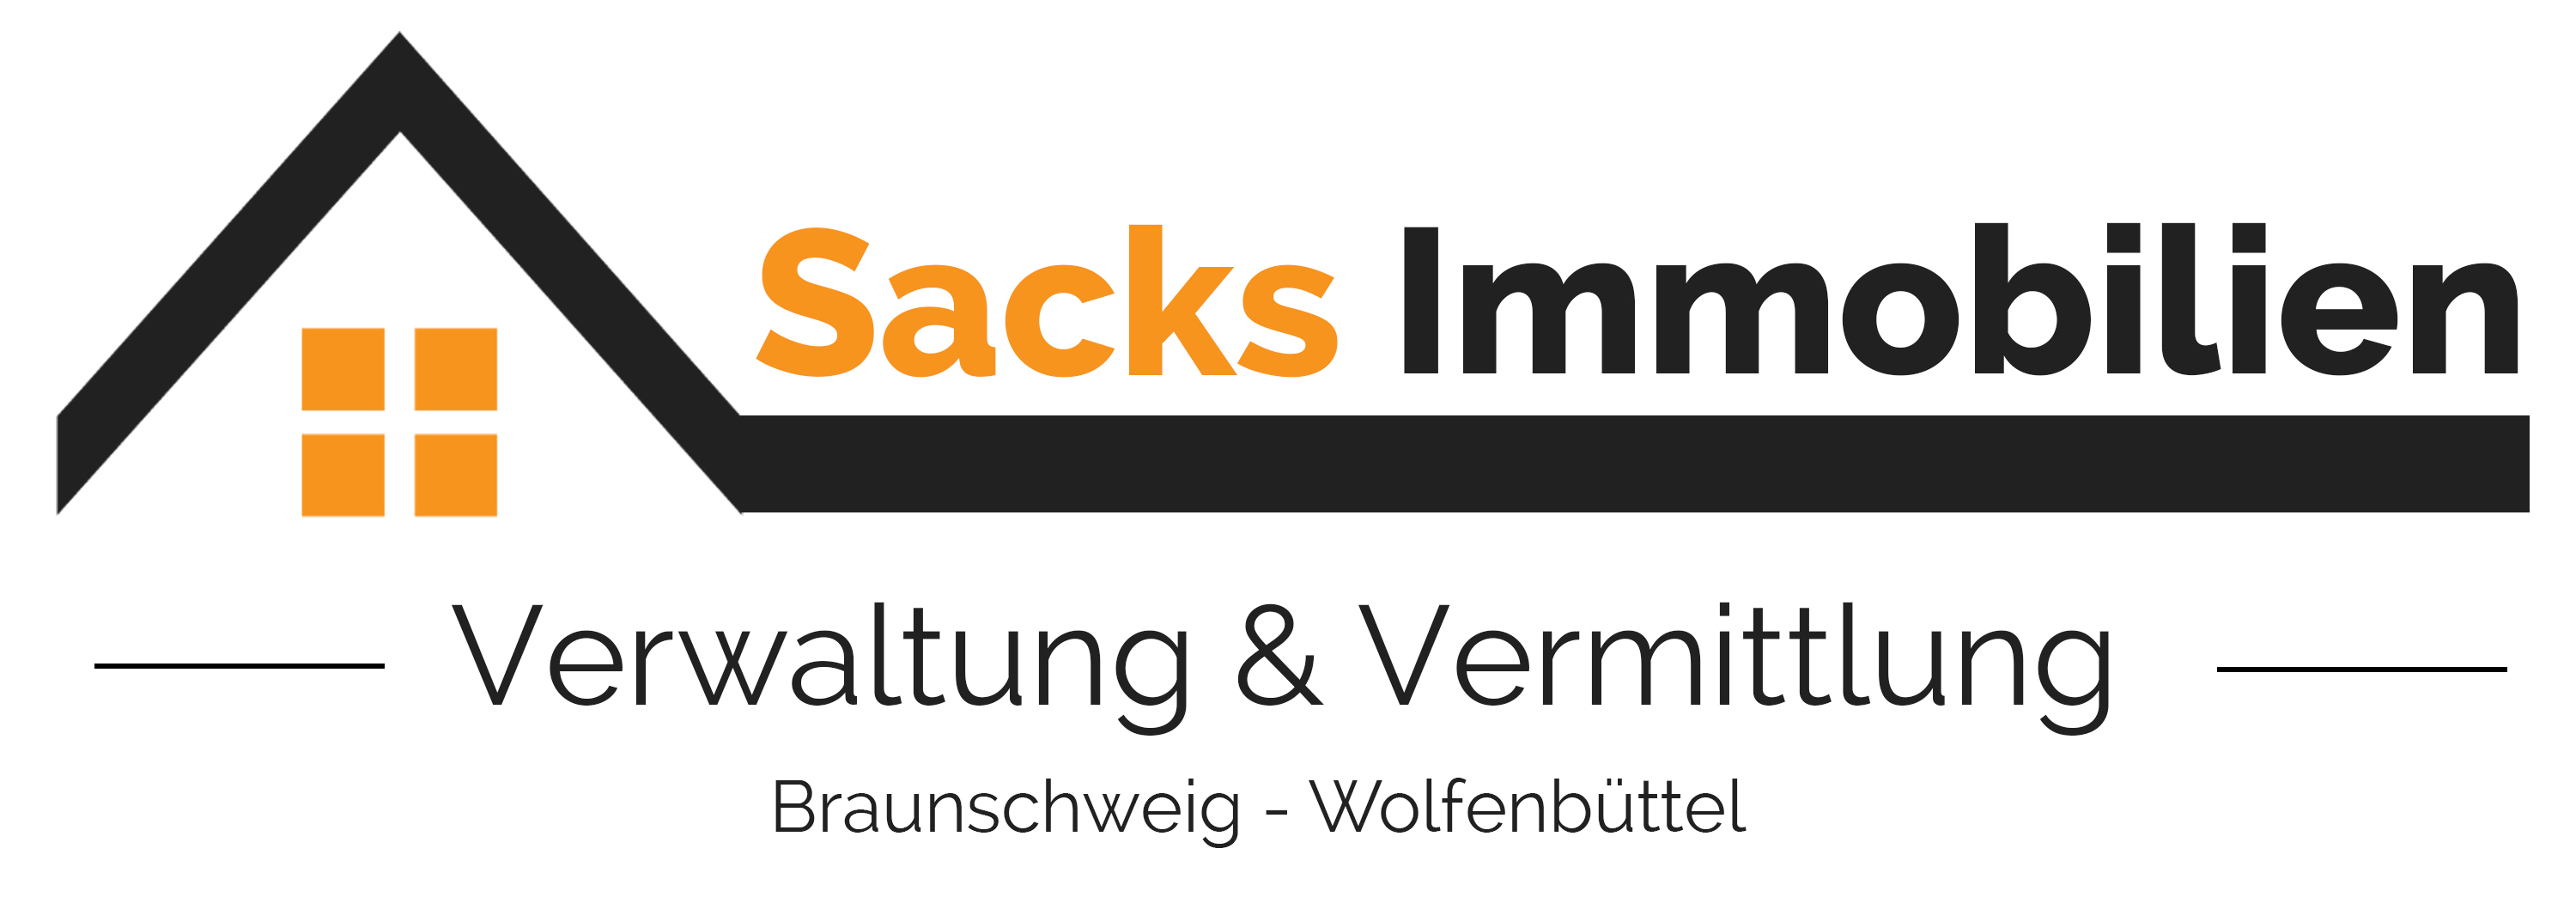 Logo von Sacks Immobilien-Verwaltung & Vermittlung